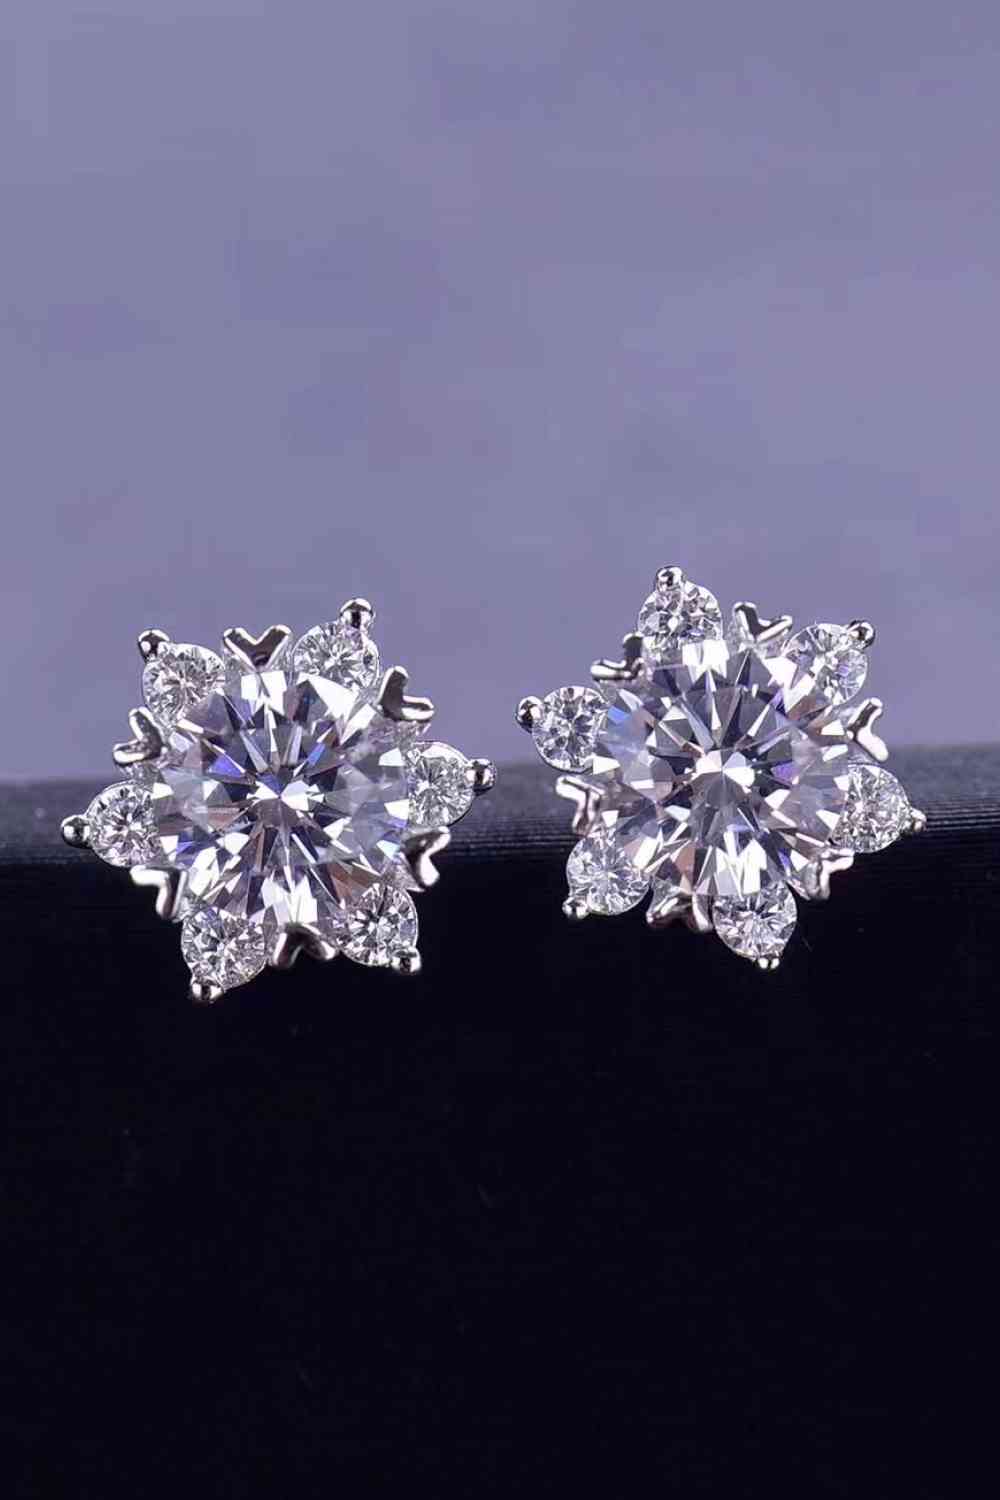 2 Carat Moissanite Floral Stud Earrings - BEYOND